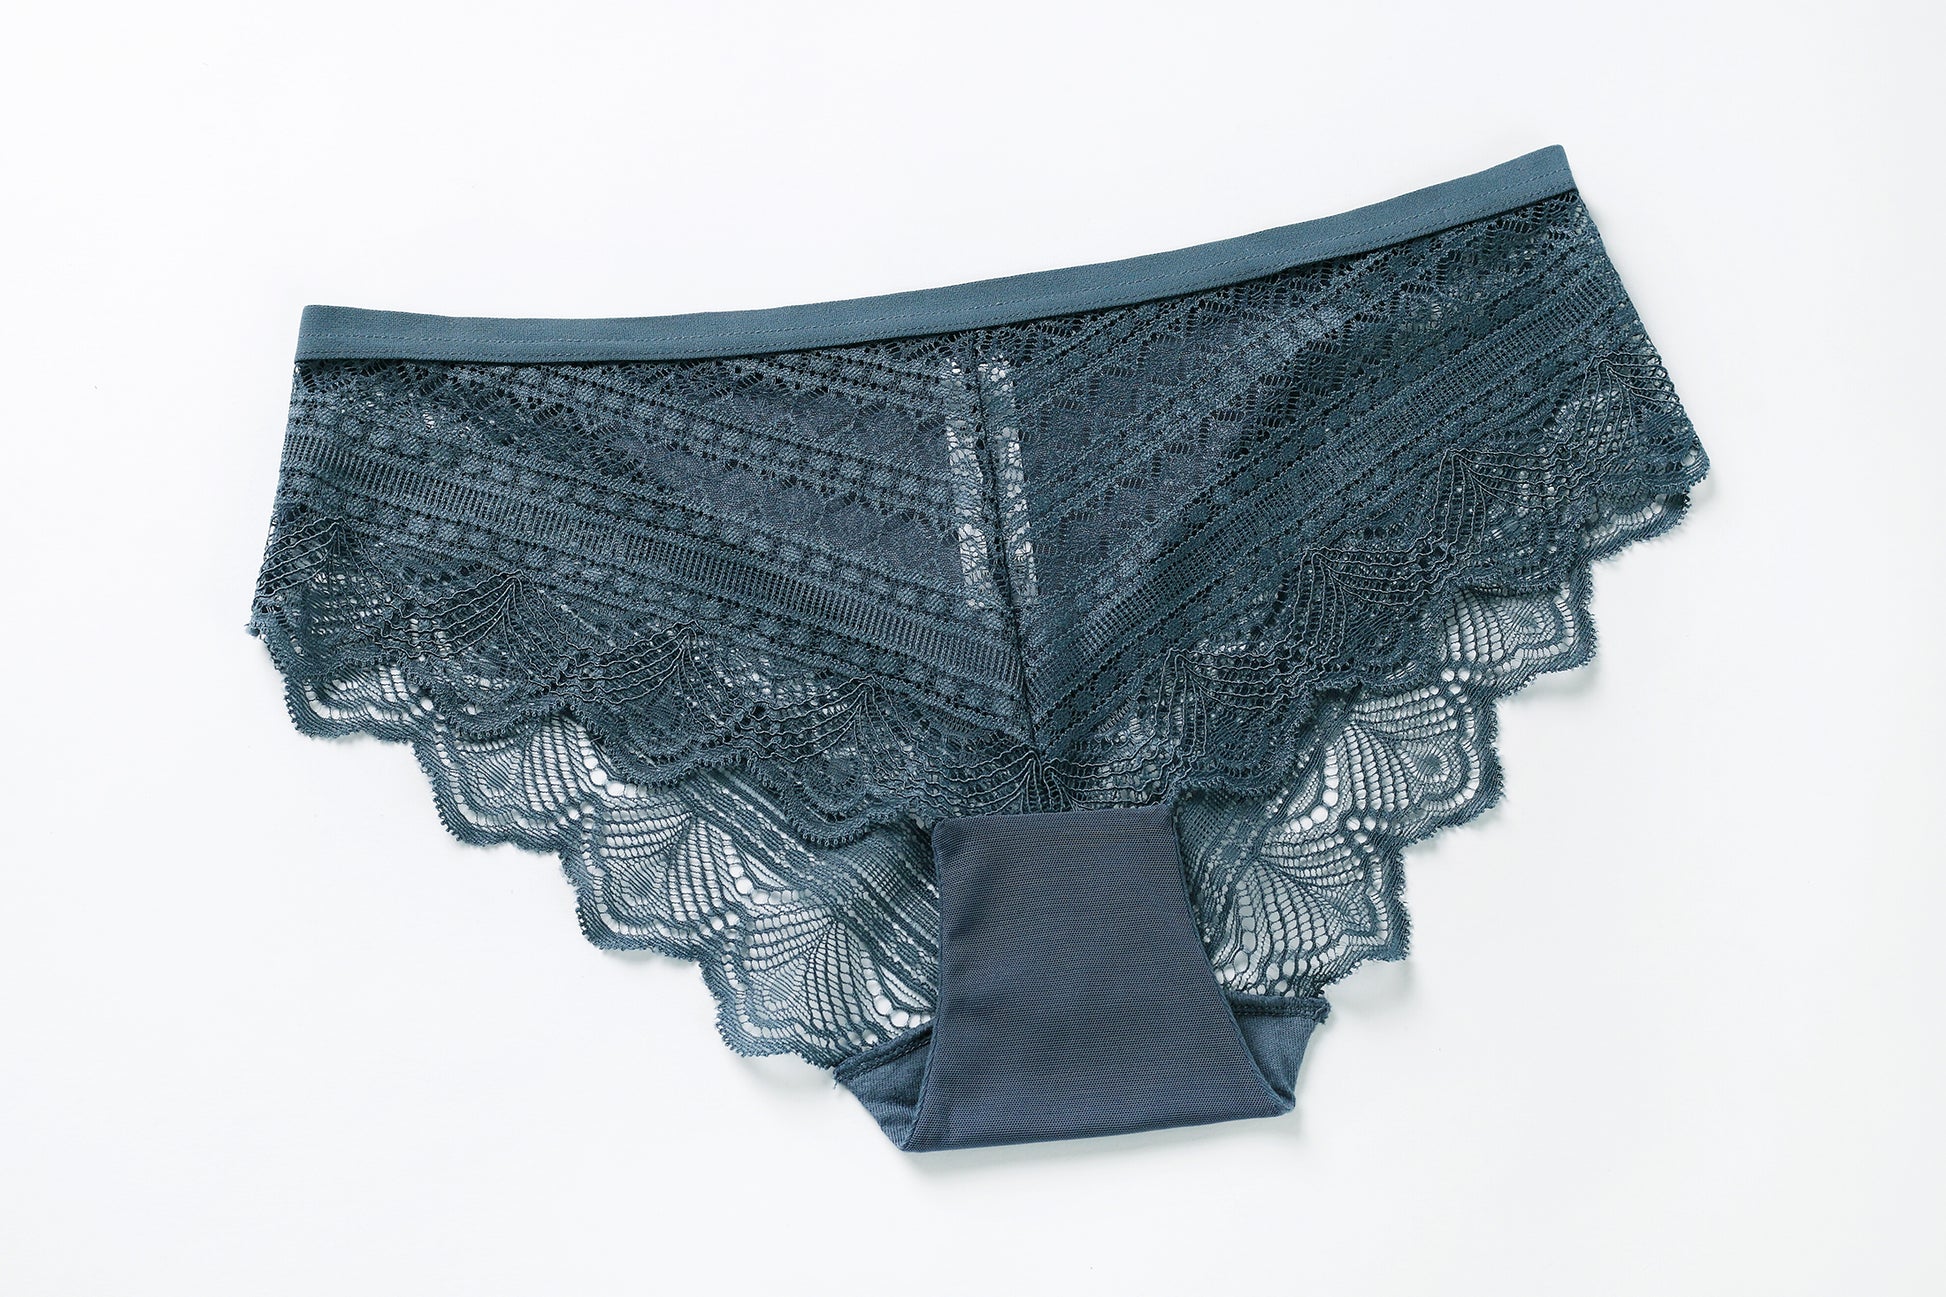 comfortable lace lingerie set